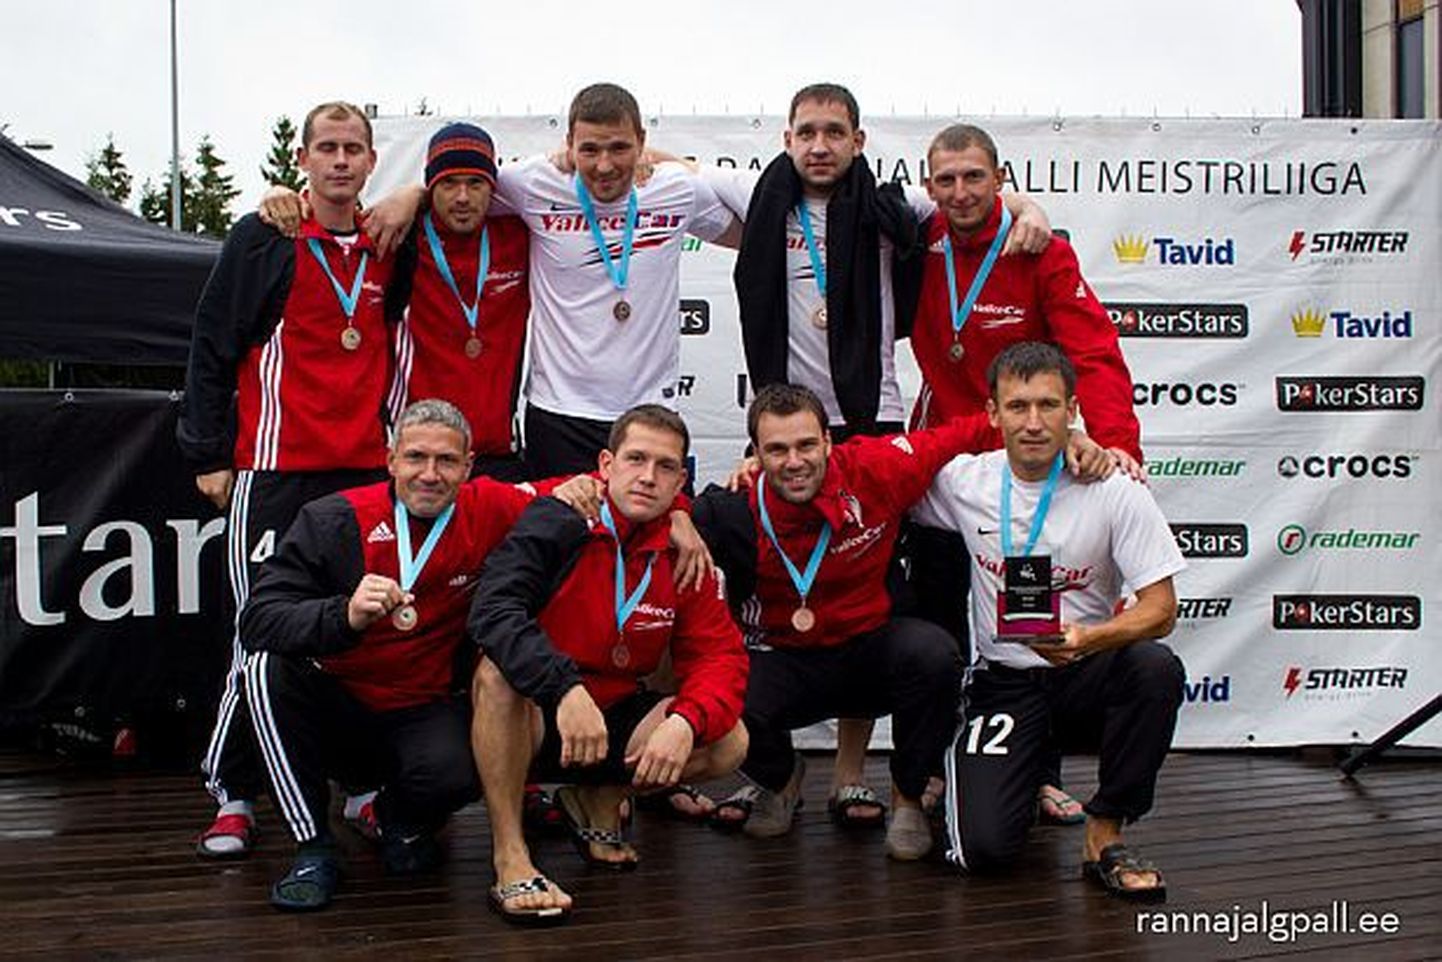 Valicecari meeskond saavutas Eesti rannajalgpalli meistriliigas tänavu kolmanda koha.